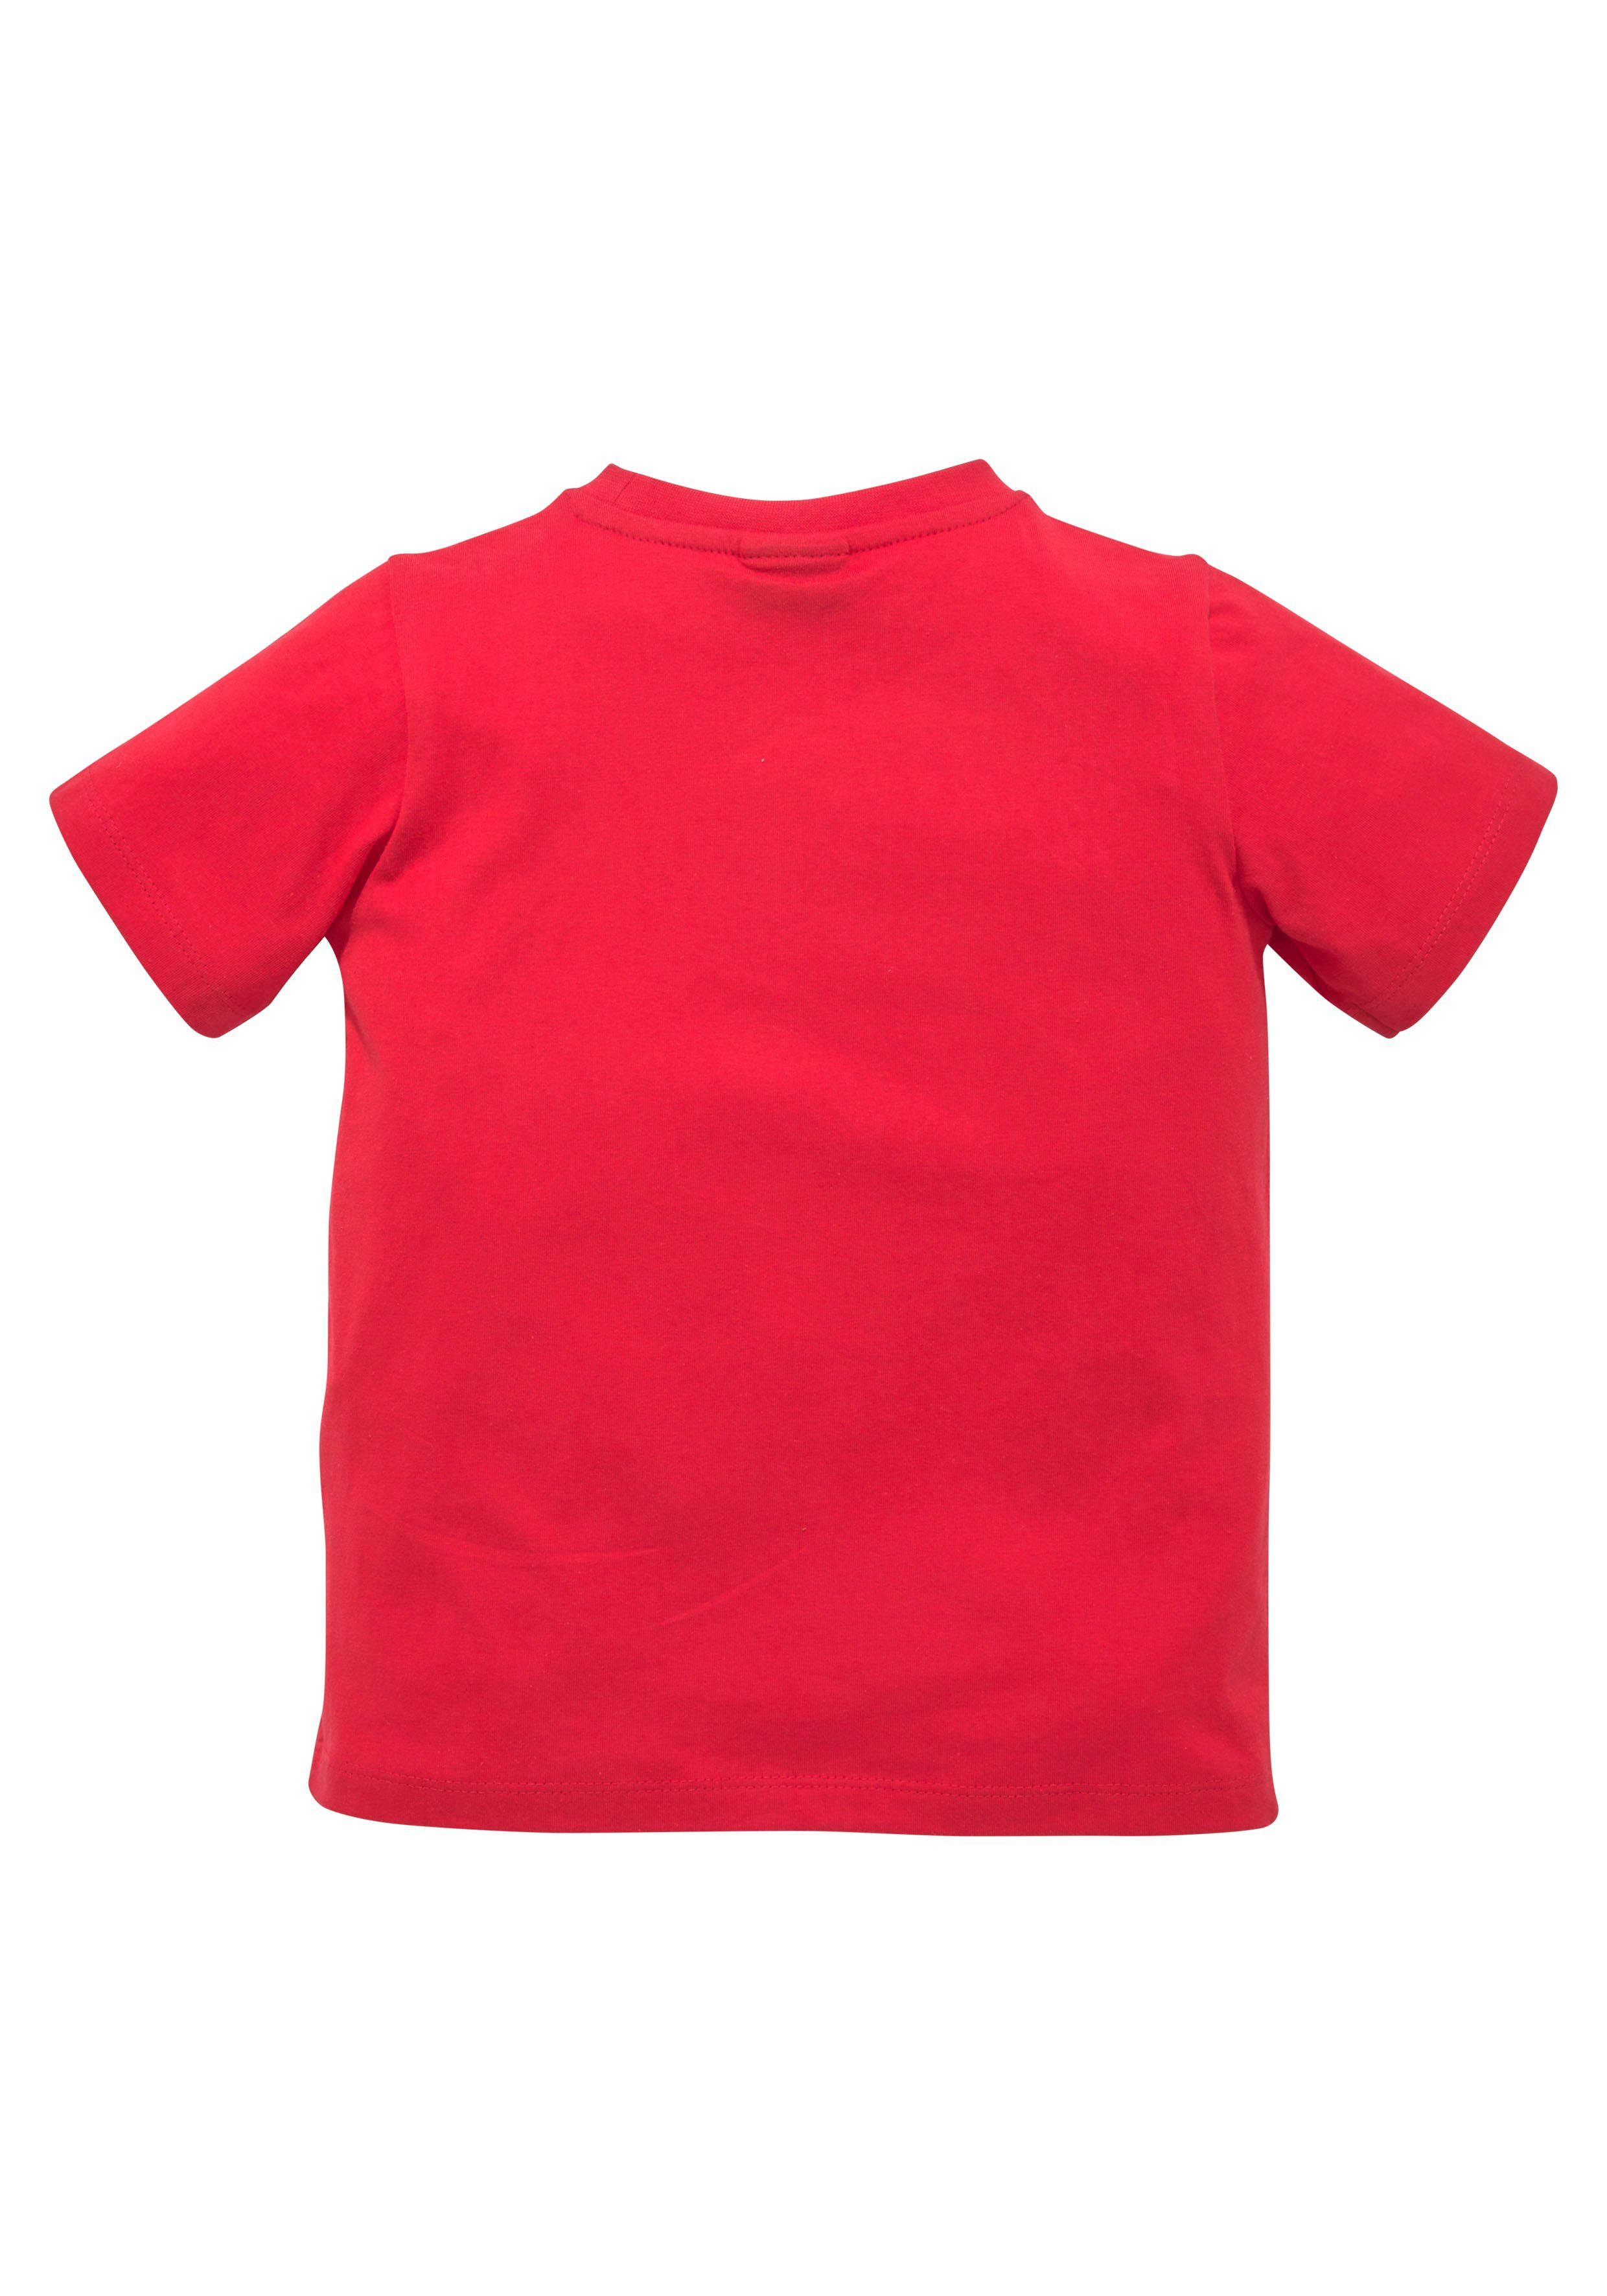 Kinder Kids (Gr. 92 - 146) KIDSWORLD T-Shirt COOLES TEAM